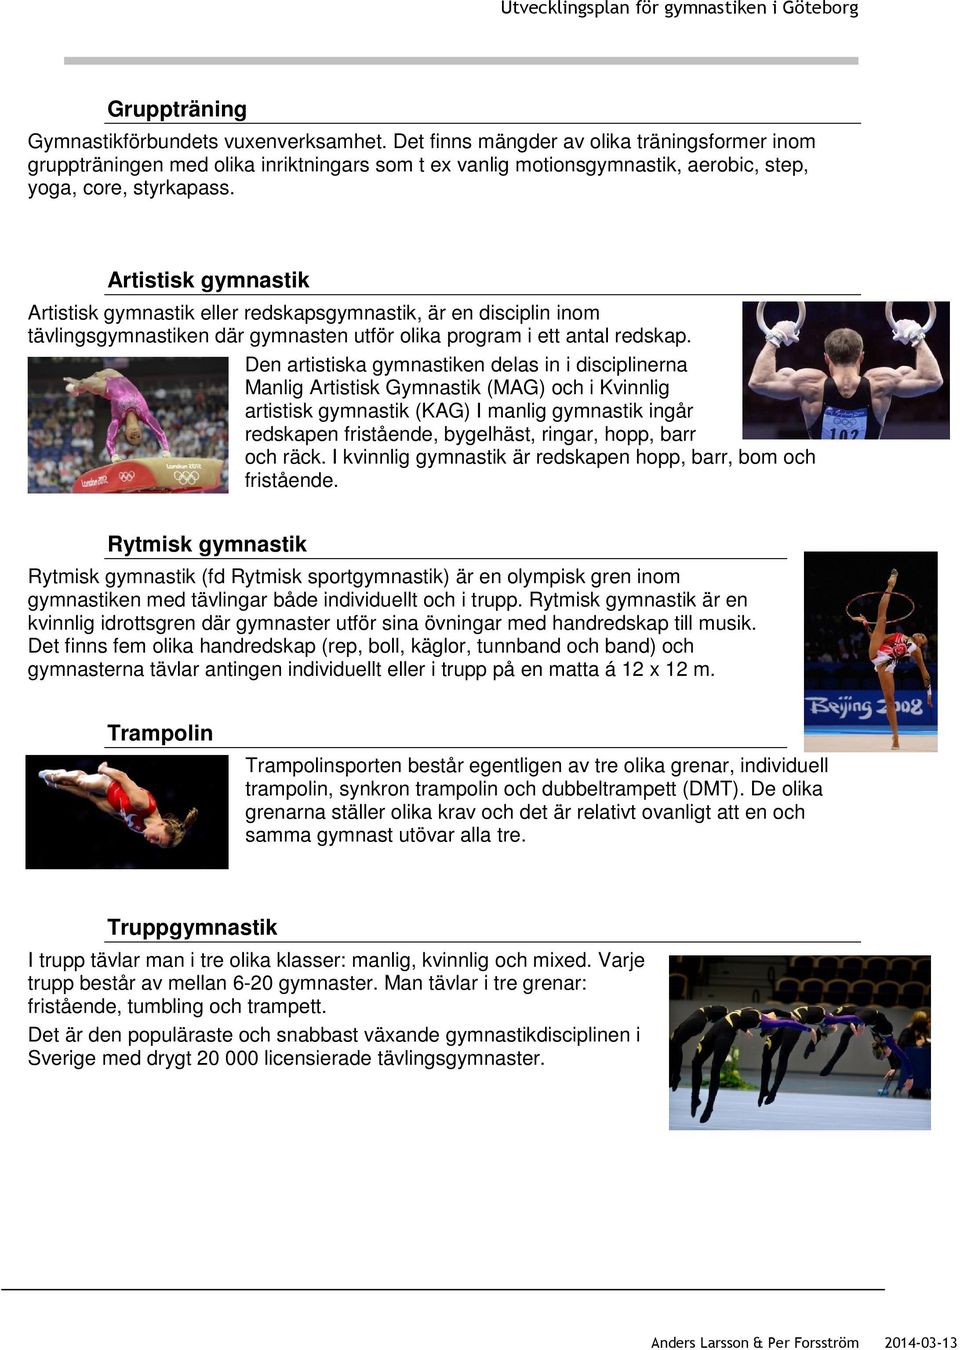 Artistisk gymnastik Artistisk gymnastik eller redskapsgymnastik, är en disciplin inom tävlingsgymnastiken där gymnasten utför olika program i ett antal redskap.